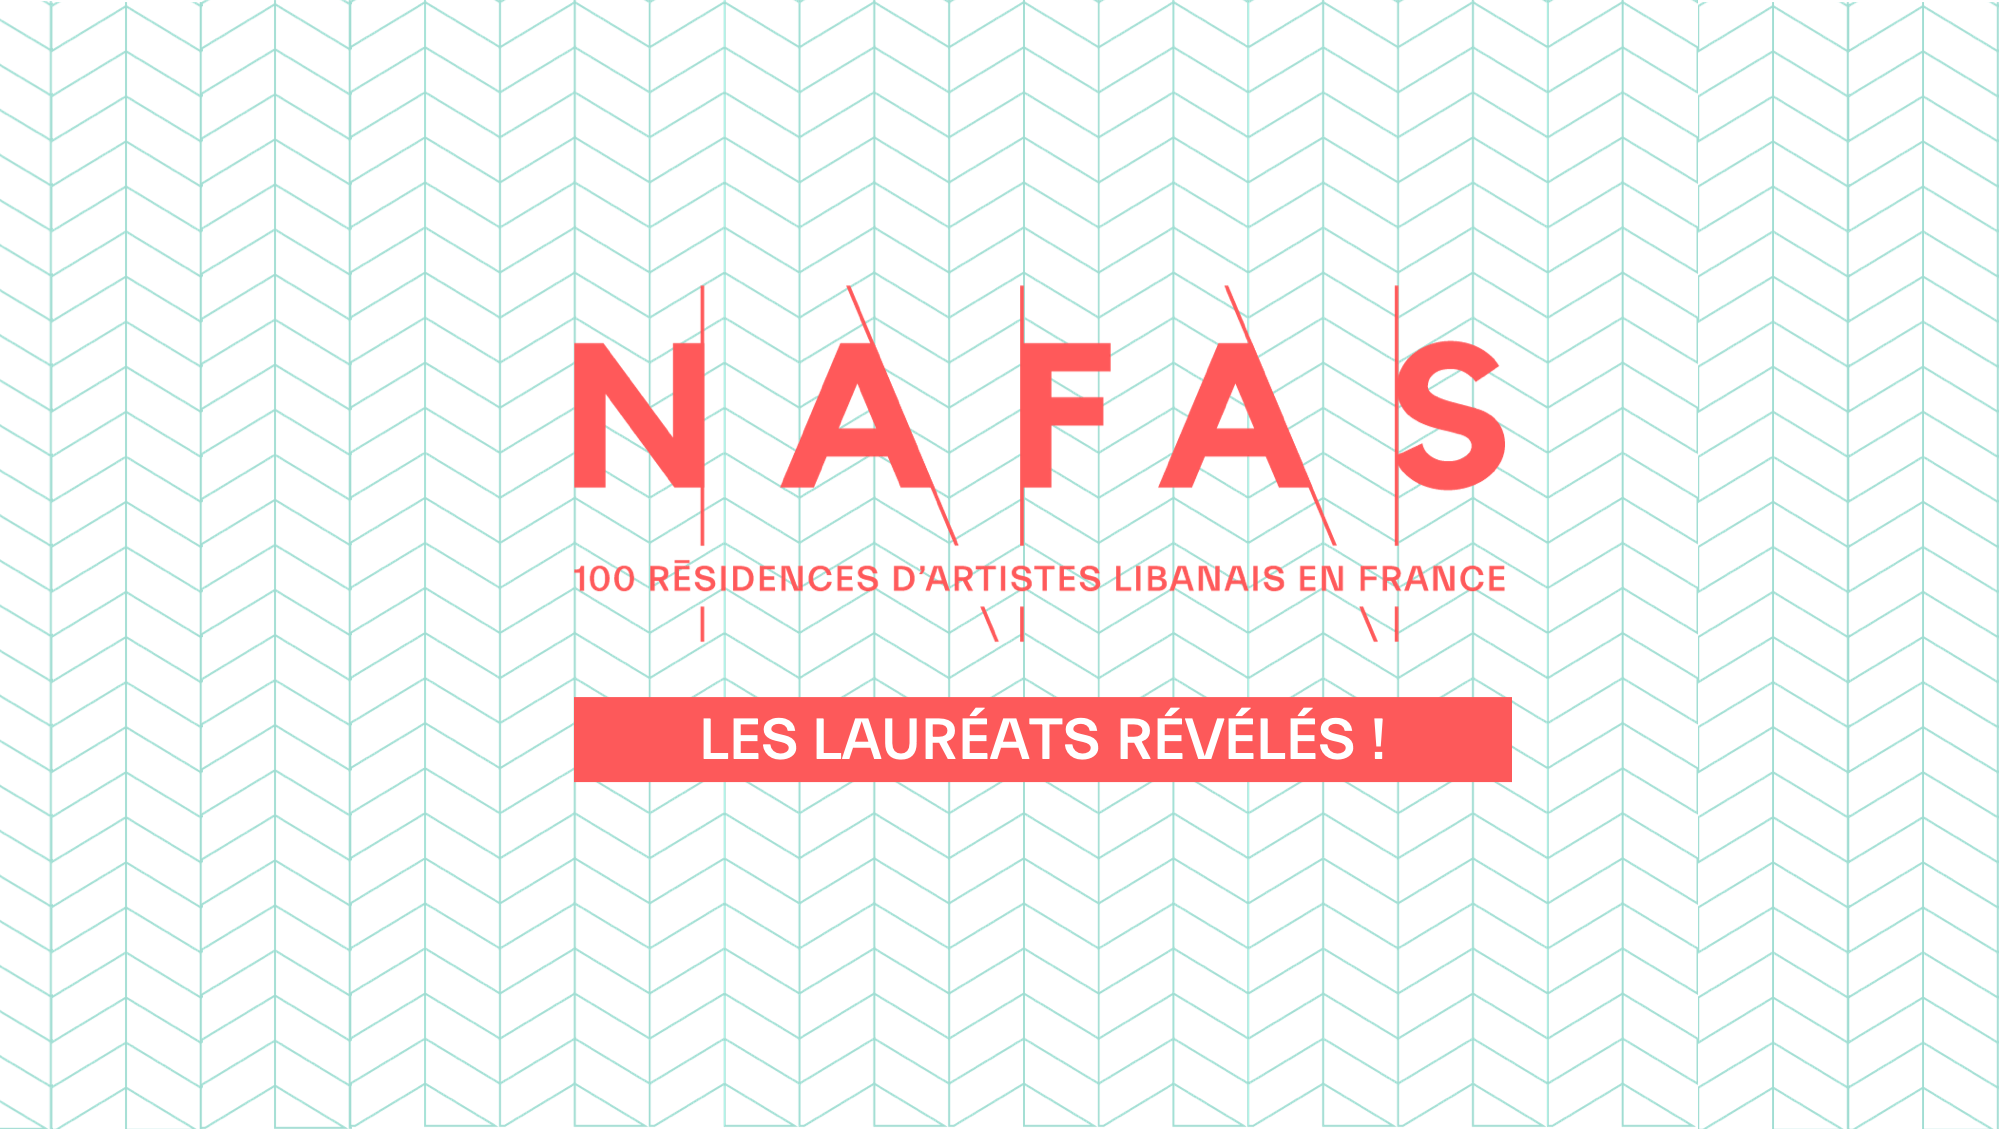 NAFAS-ACCR laureates